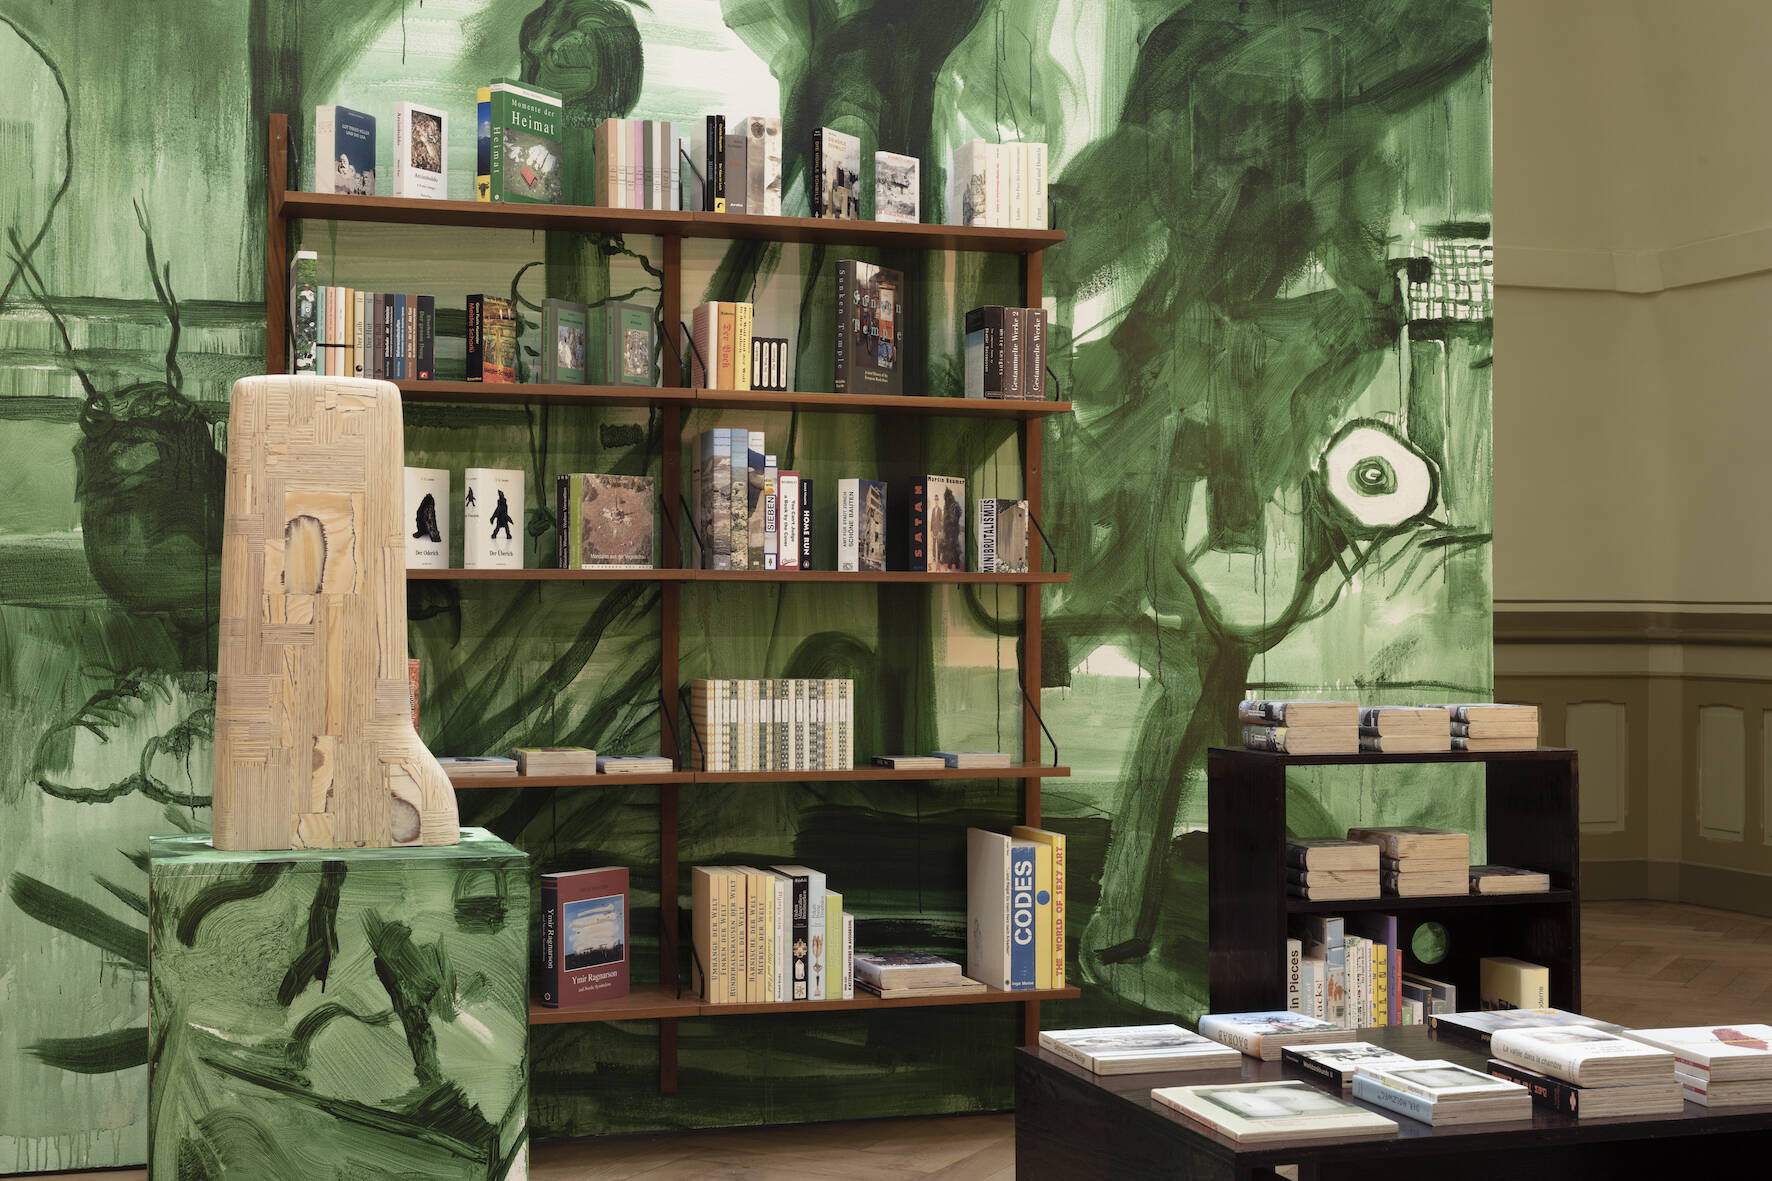 Lutz & Guggisberg, Bibliothèque imaginaire, 1999-2020 - installation de 467 sculptures de livres, 2 sculptures en bois, étagères, lampes, cimaise et socles